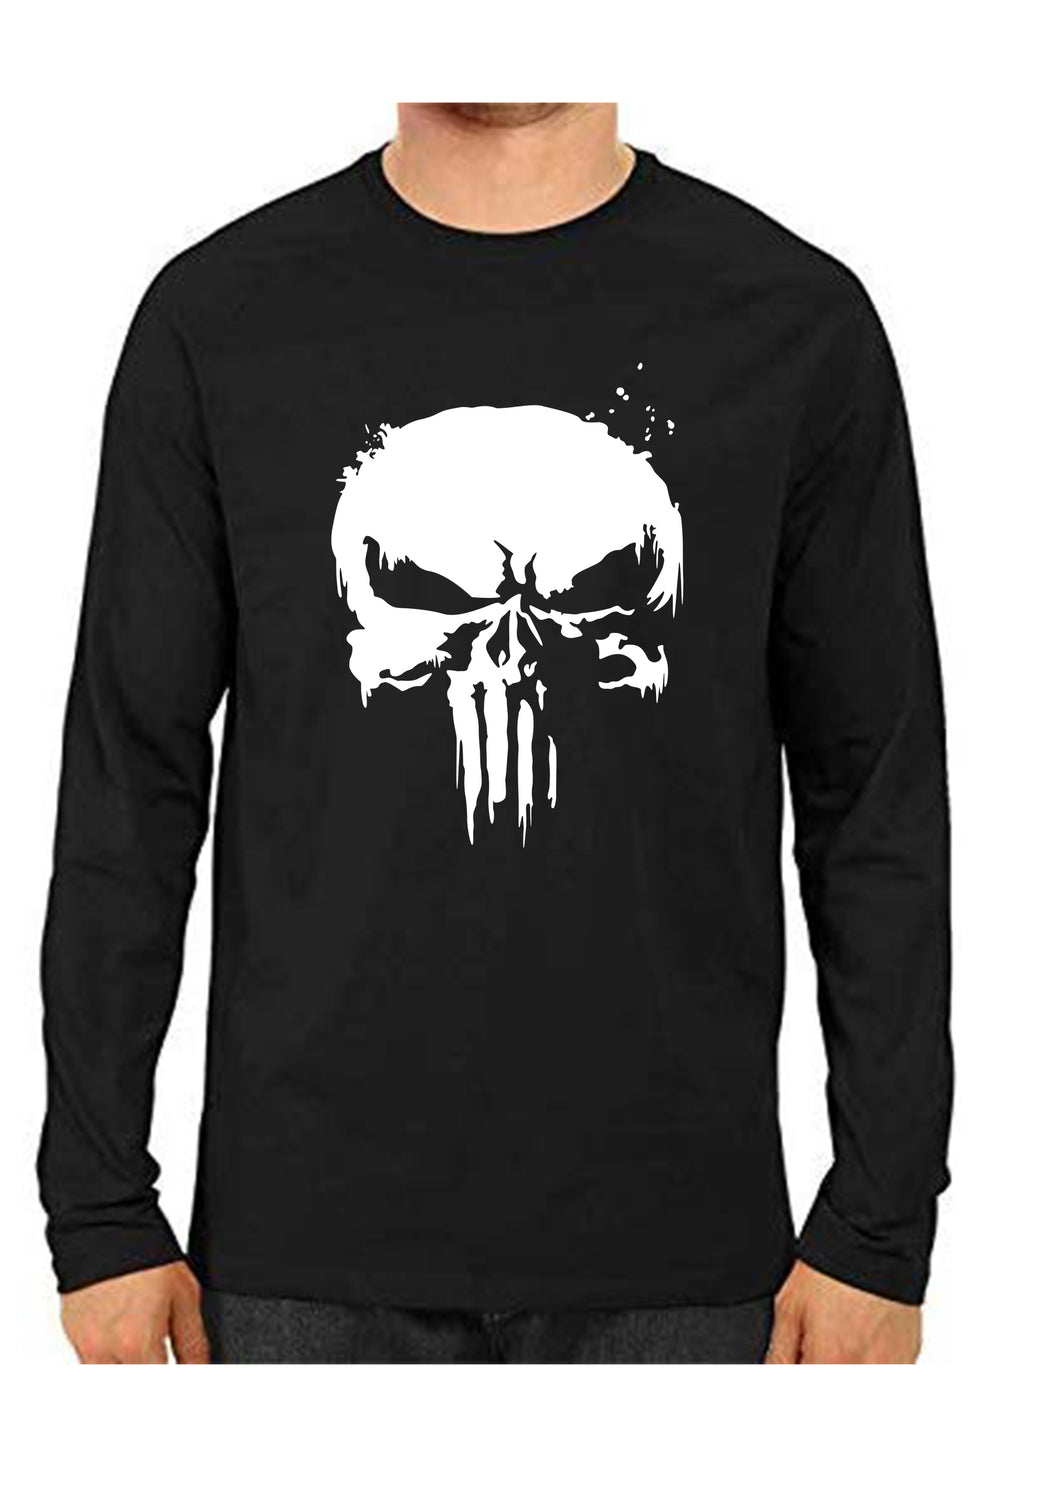 Unisex Punisher Black Full Sleeve Cotton  Tshirts